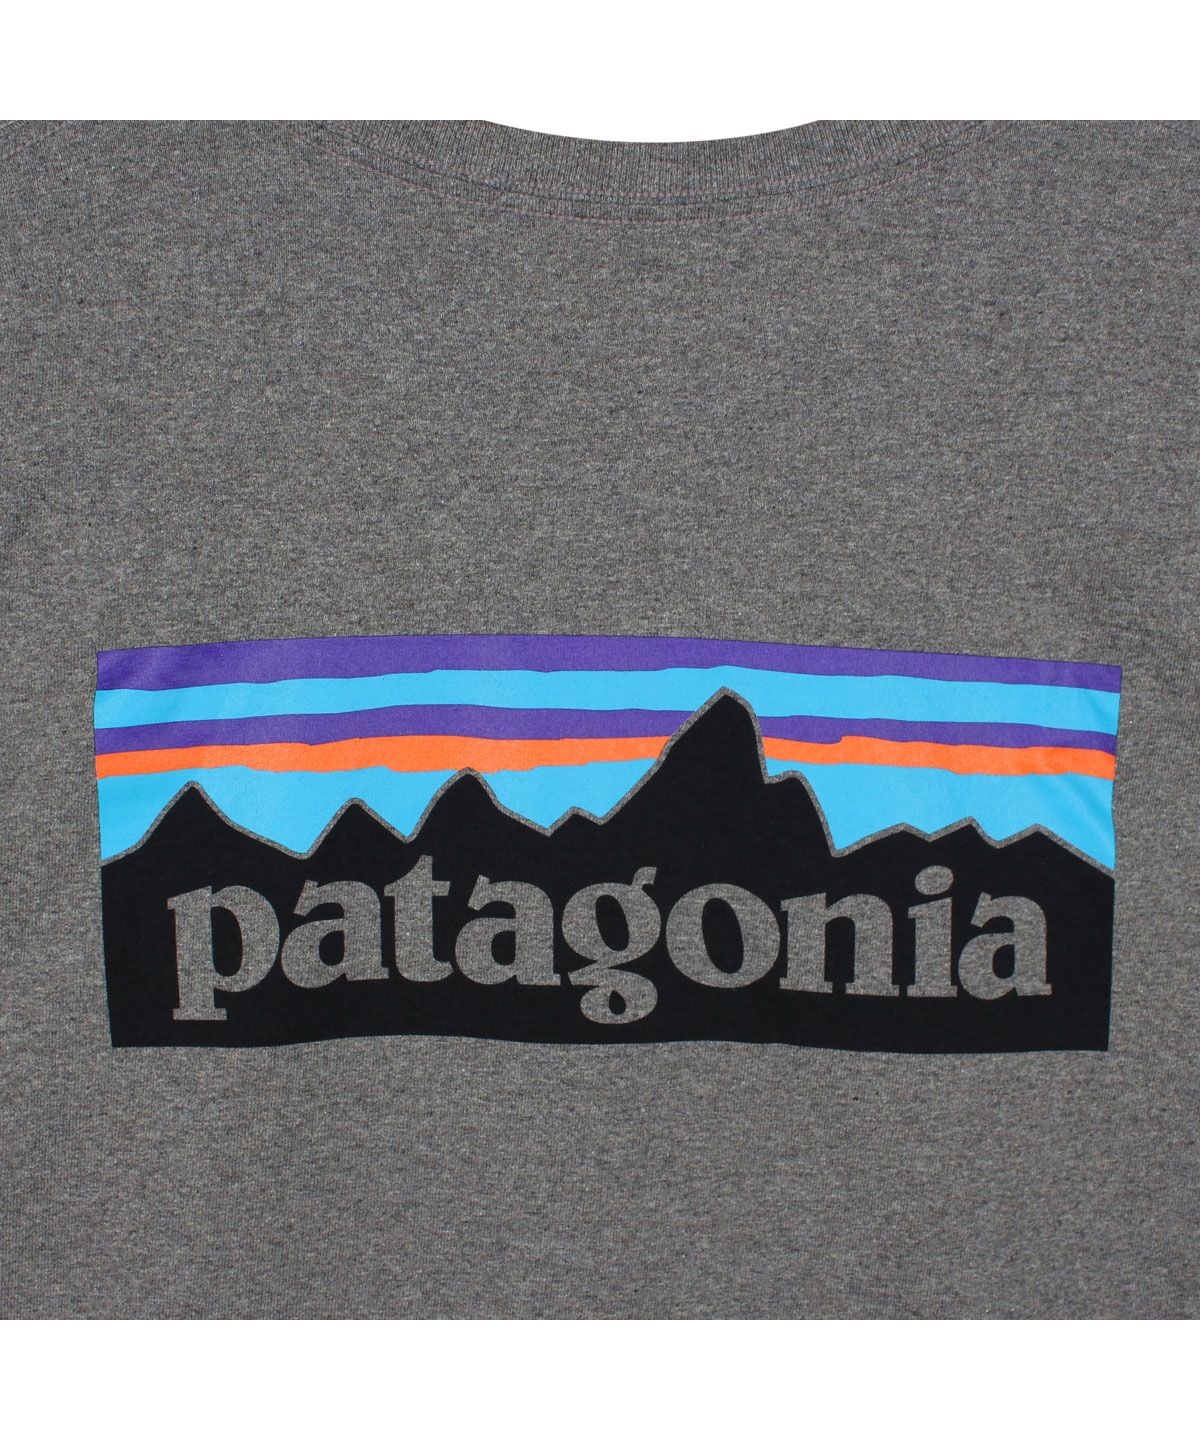 パタゴニア patagonia Tシャツ 長袖 ロンT カットソー レスポンシビ 